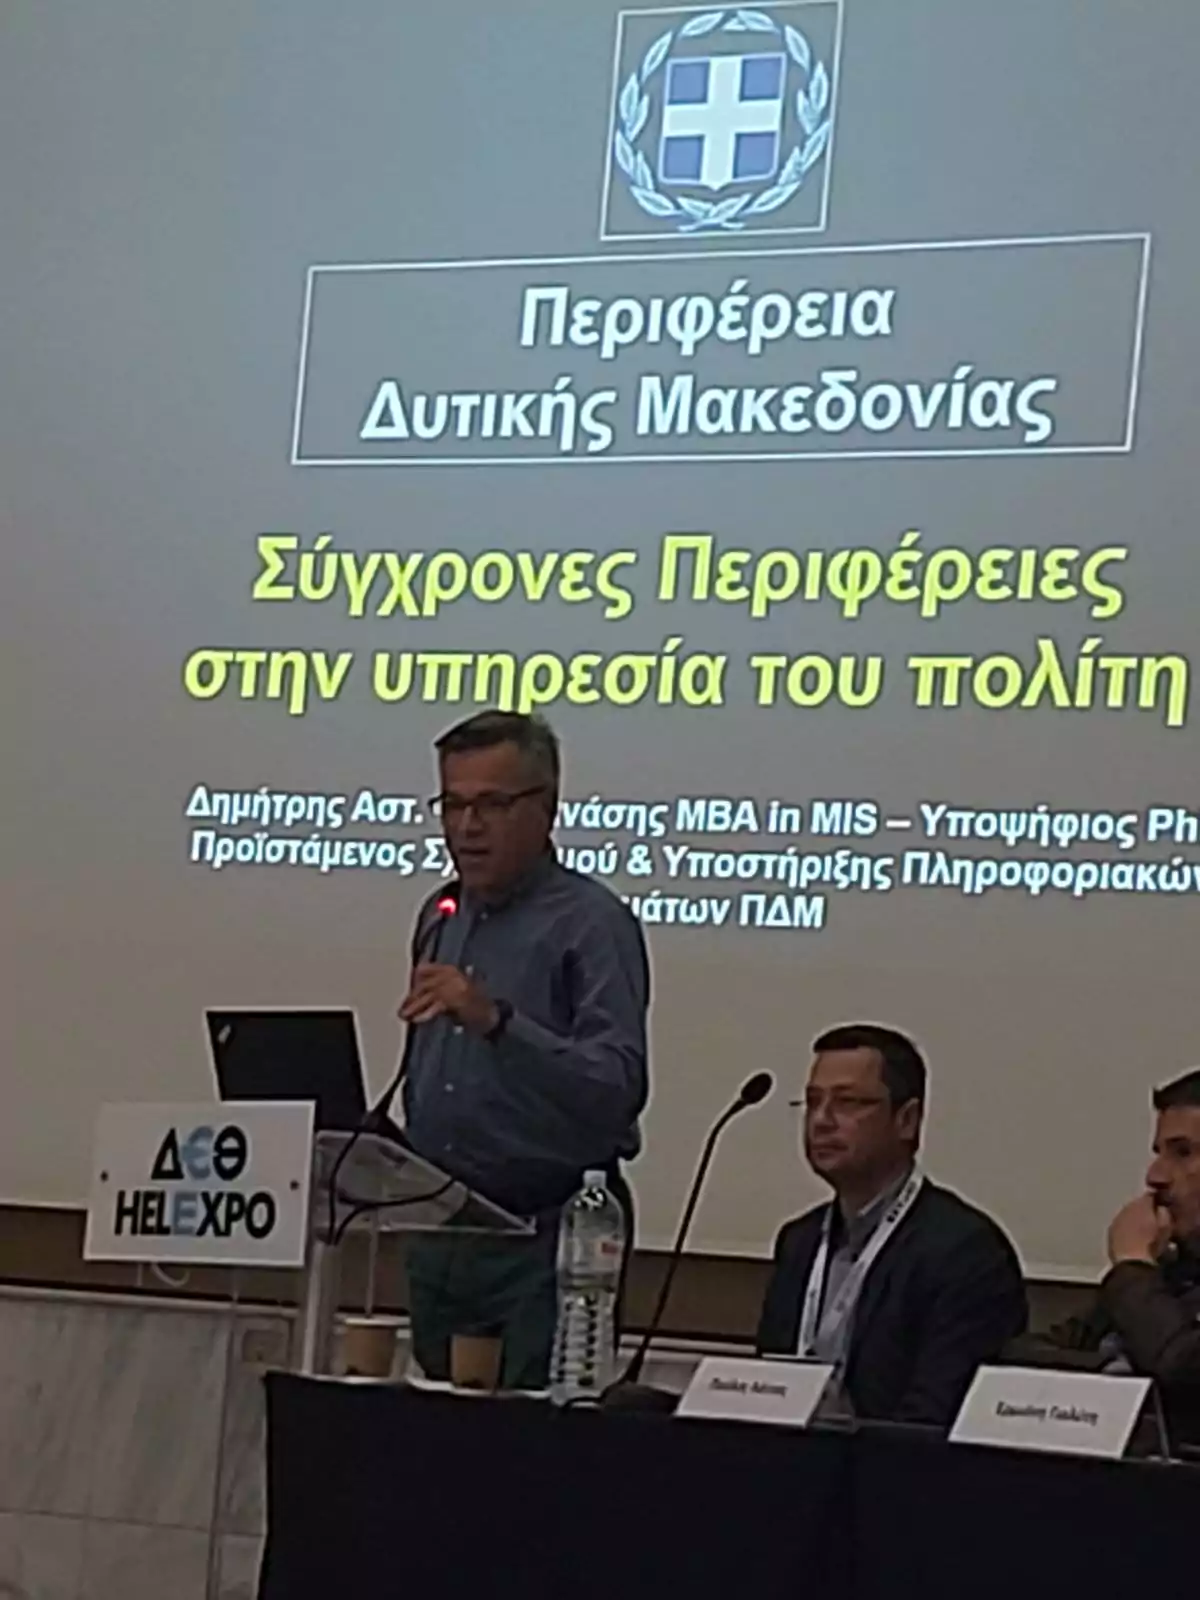 Συμμετοχή της Περιφέρειας Δυτικής Μακεδονίας στο 3ο Συνέδριο Καινοτομίας και Νέων Τεχνολογιών Τοπικής Αυτοδιοίκησης